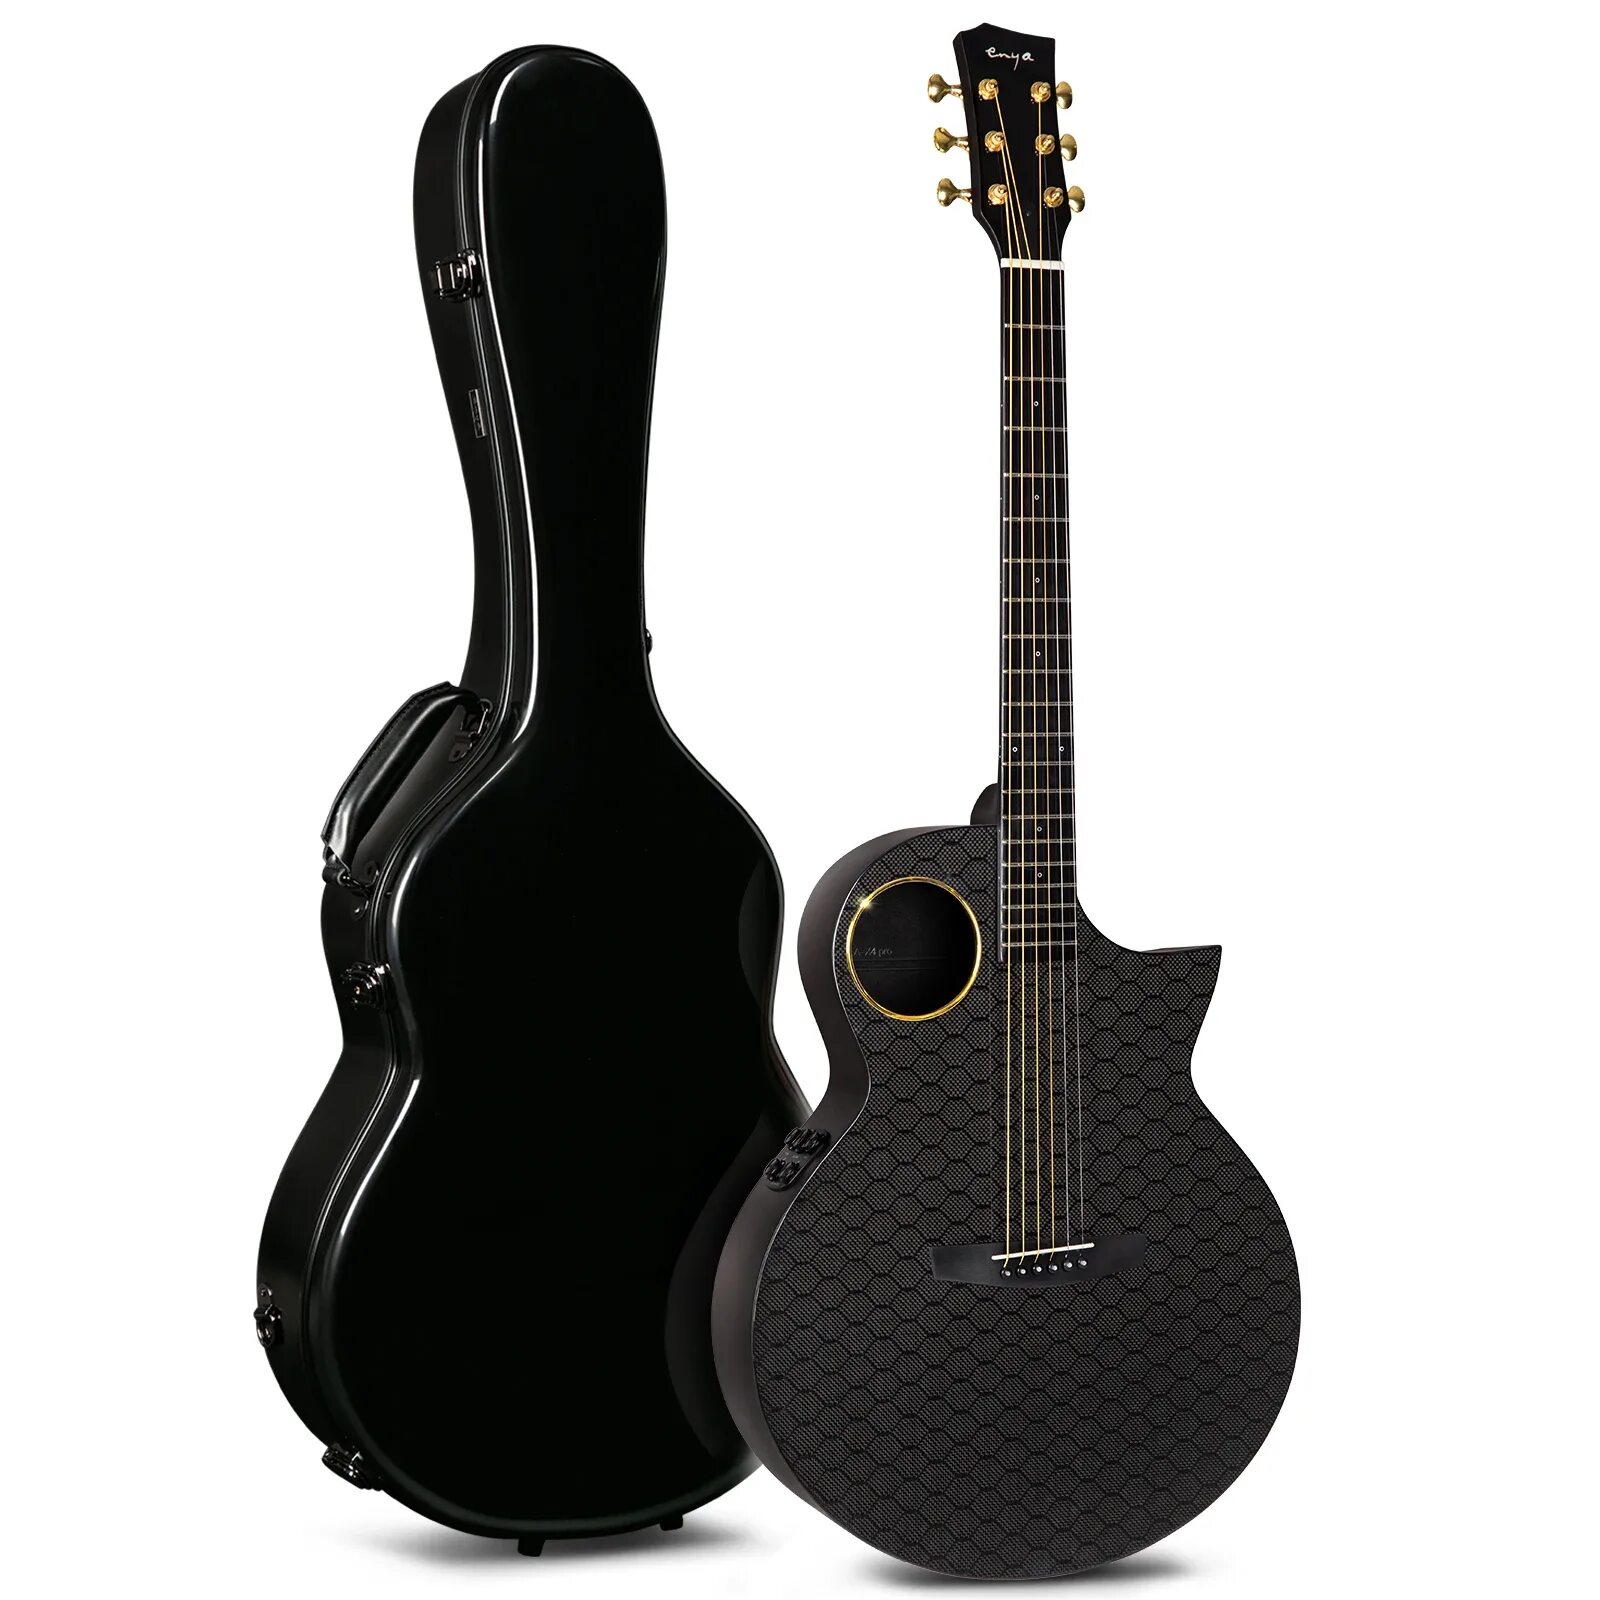 Гитара enya купить. Карбоновая гитара Enya. Трансакустическая гитара Enya EA-x2 Pro+EQ. Карбоновая Enya гитара Enya карбон. Enya NEXG гитара.